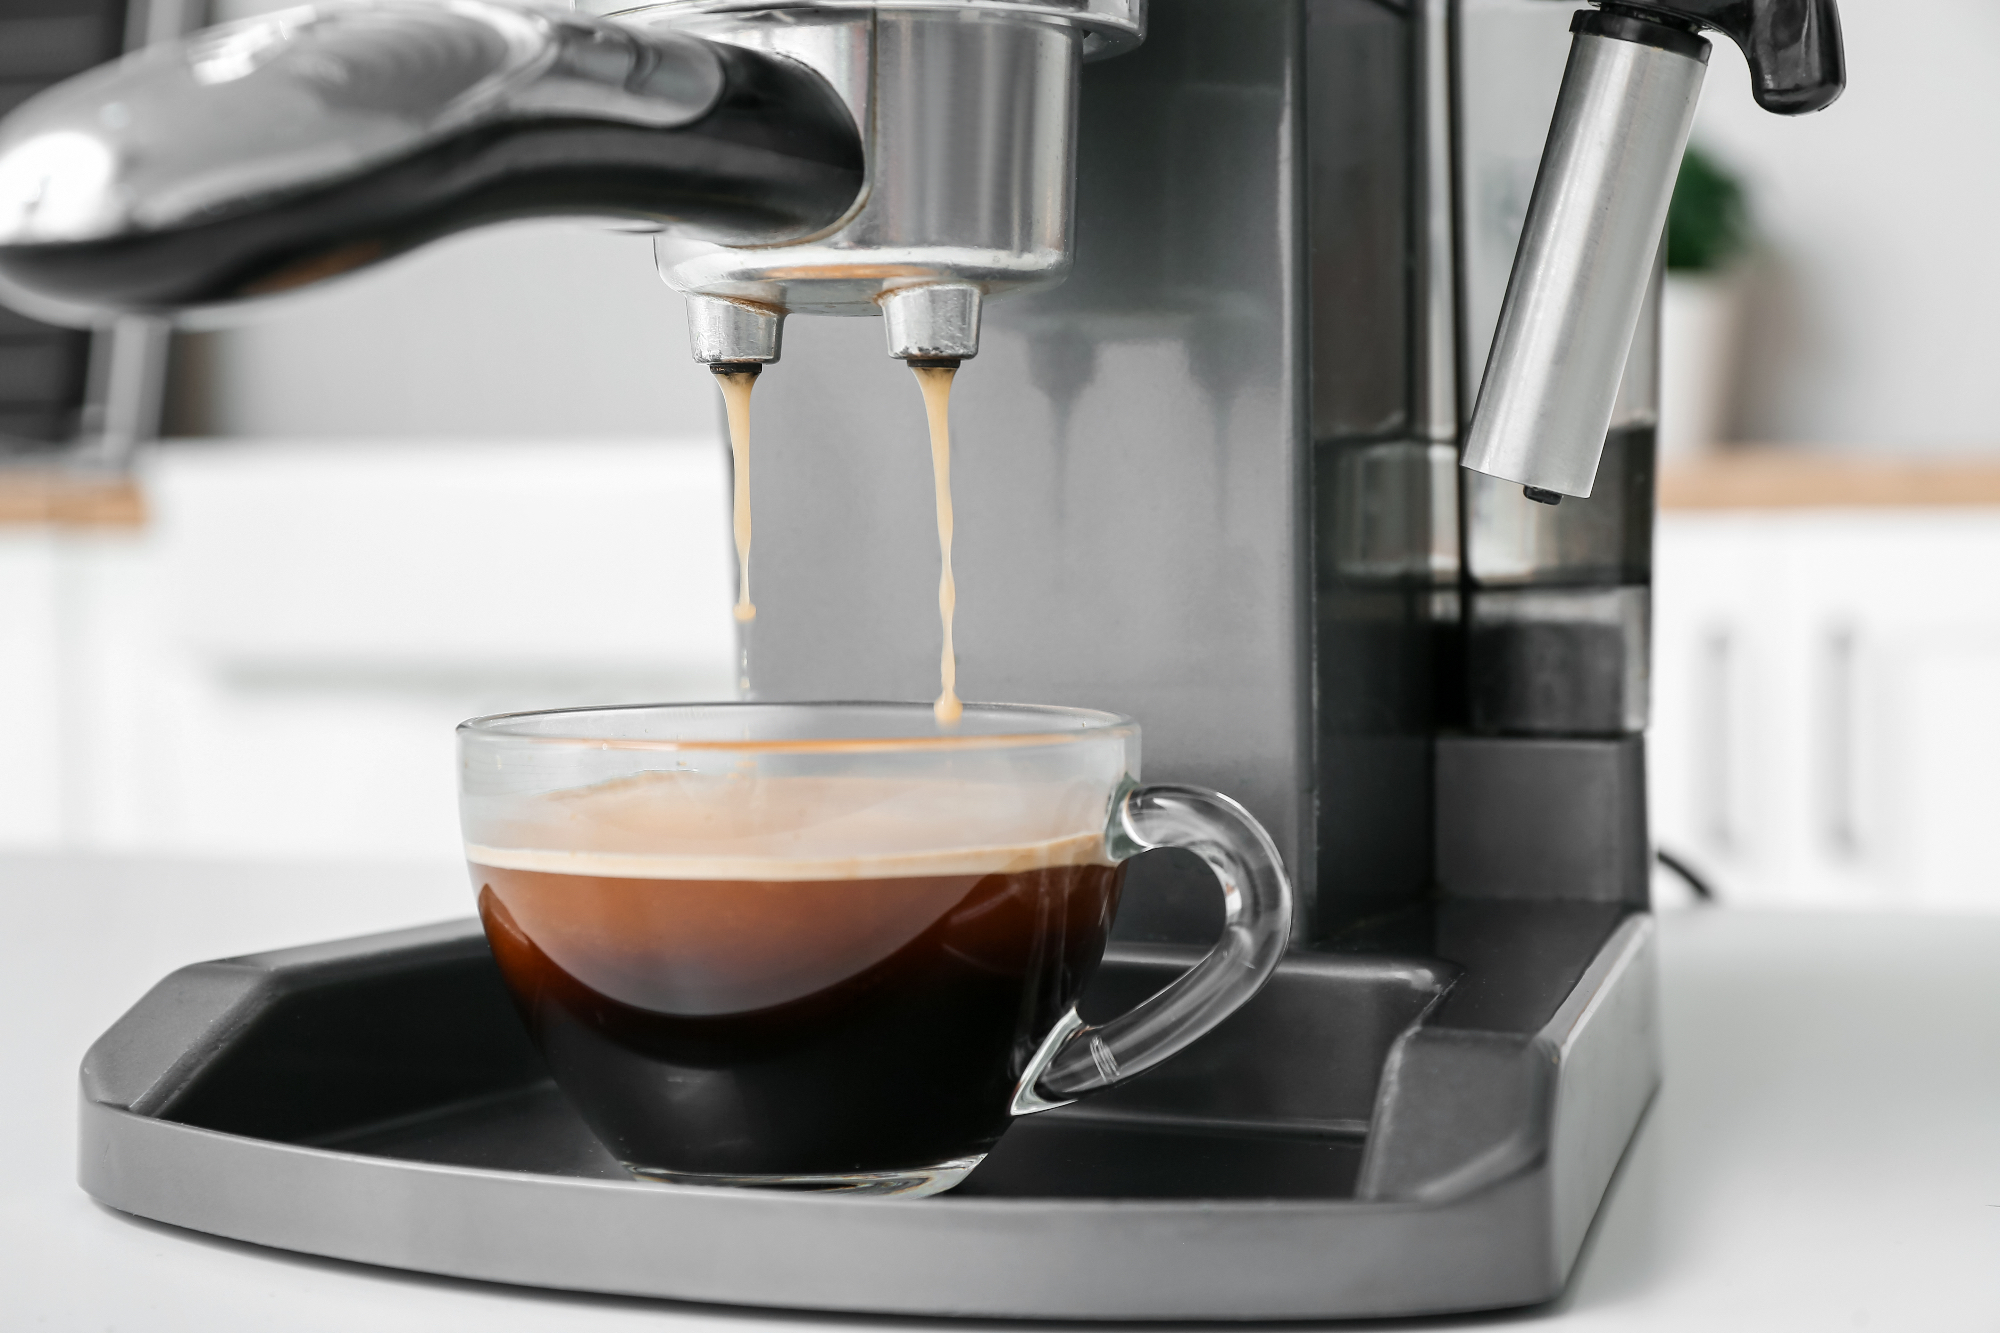 Kavni aparati omogočajo hitro pripravo kave